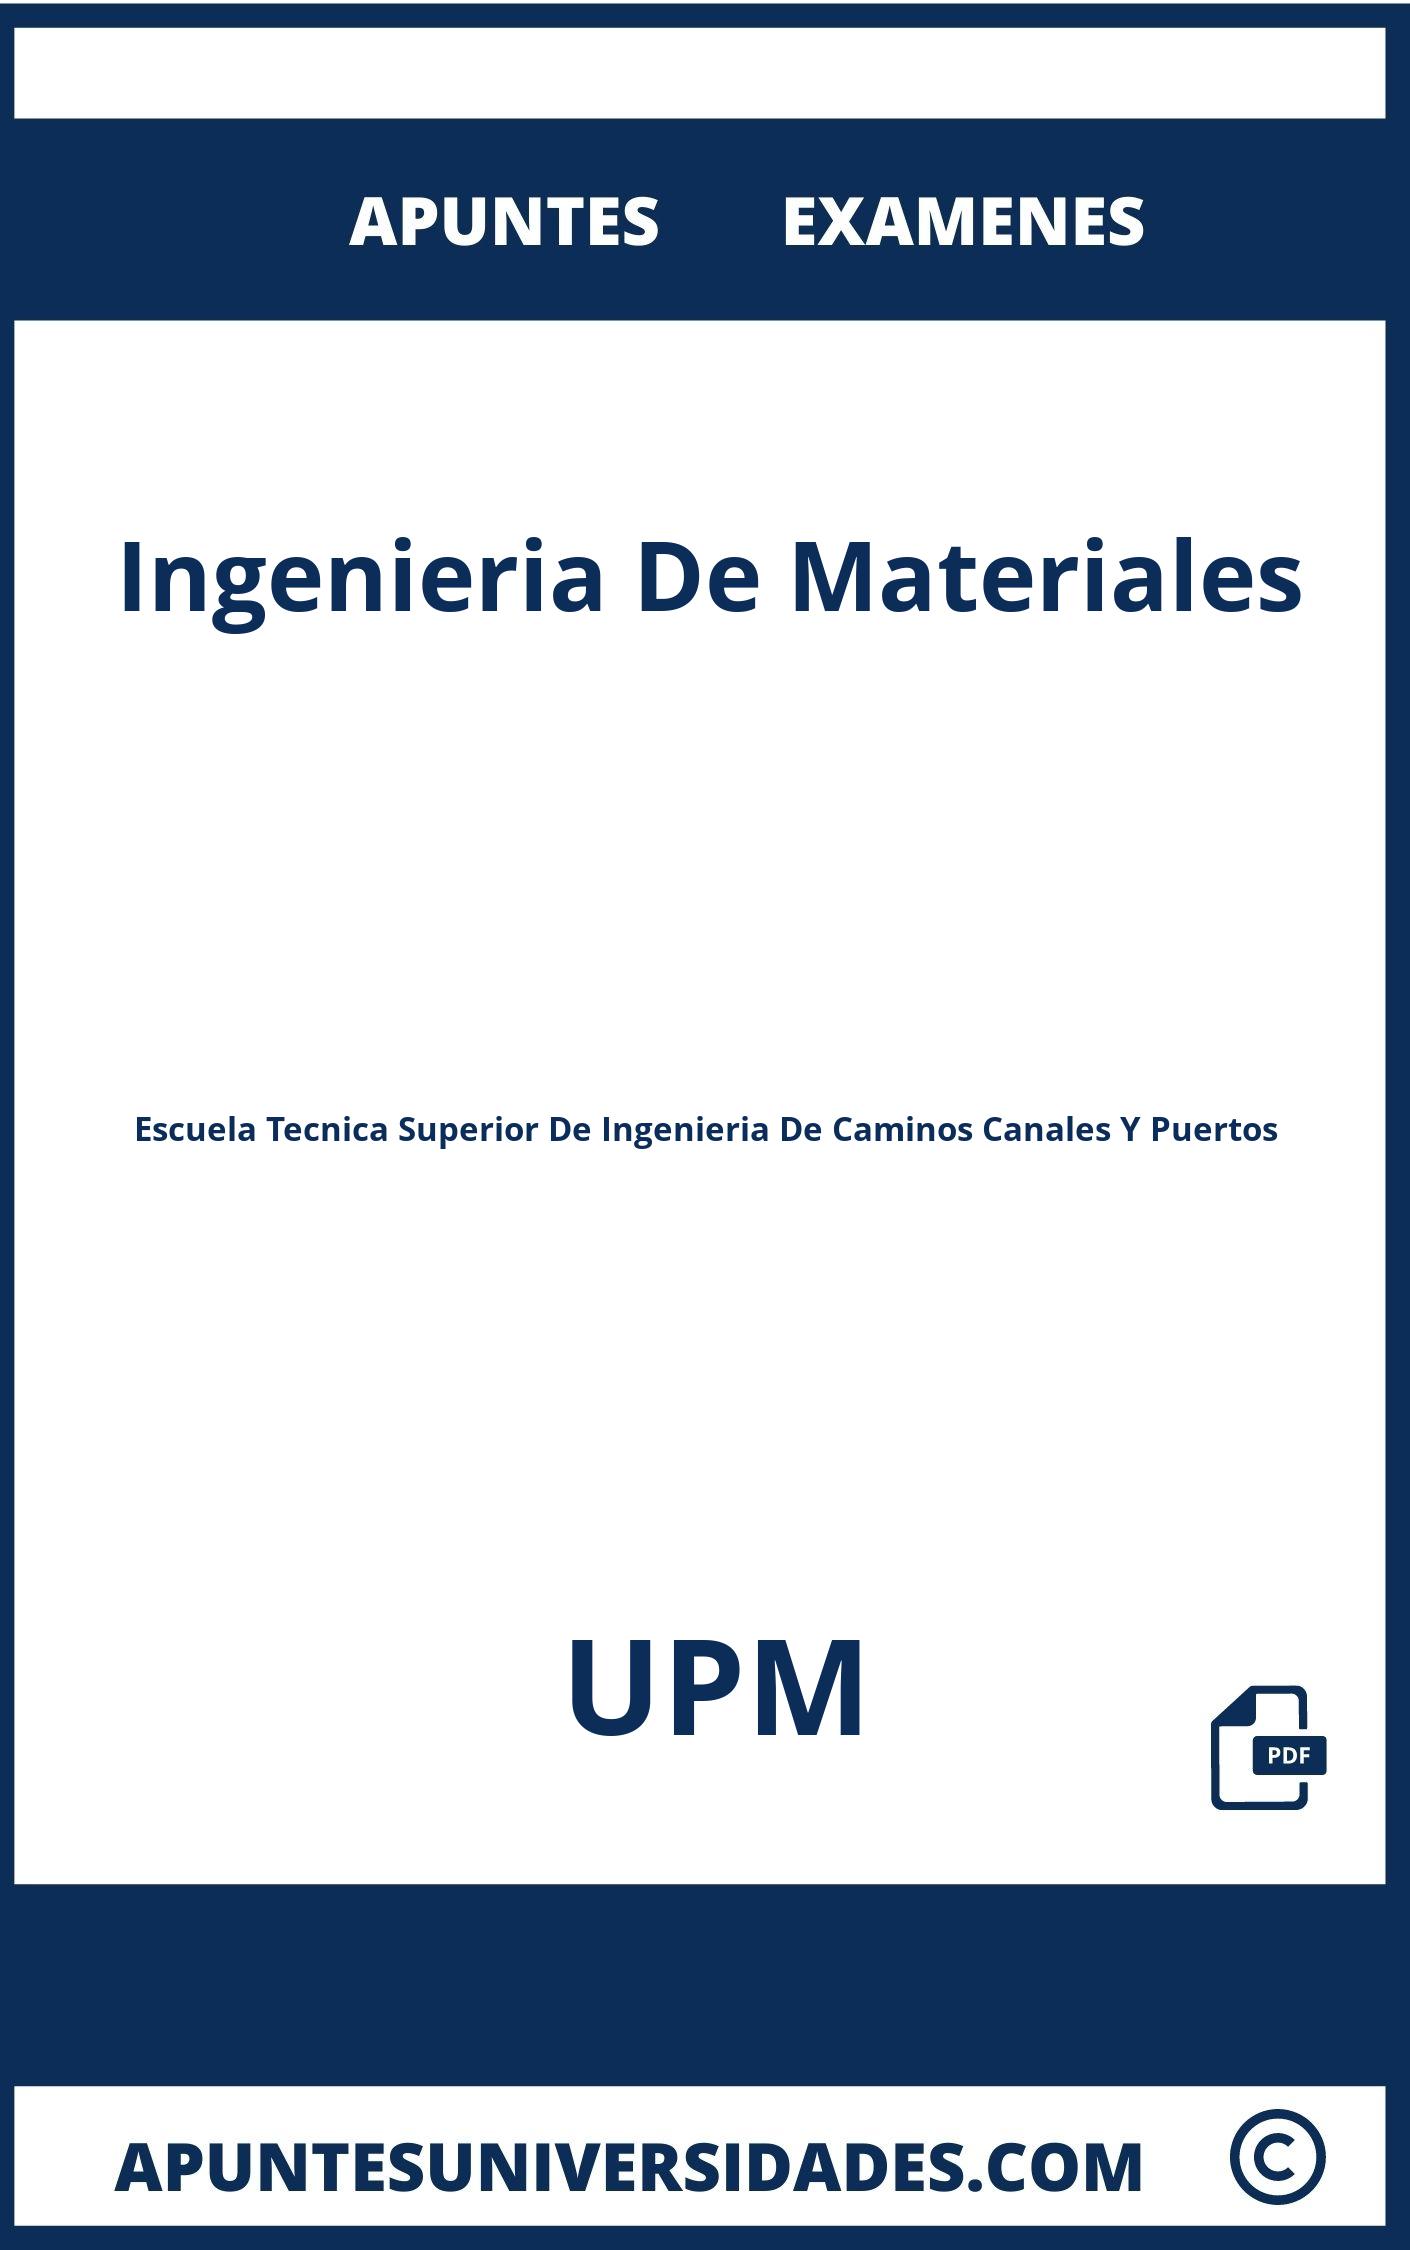 Apuntes Examenes Ingenieria De Materiales UPM